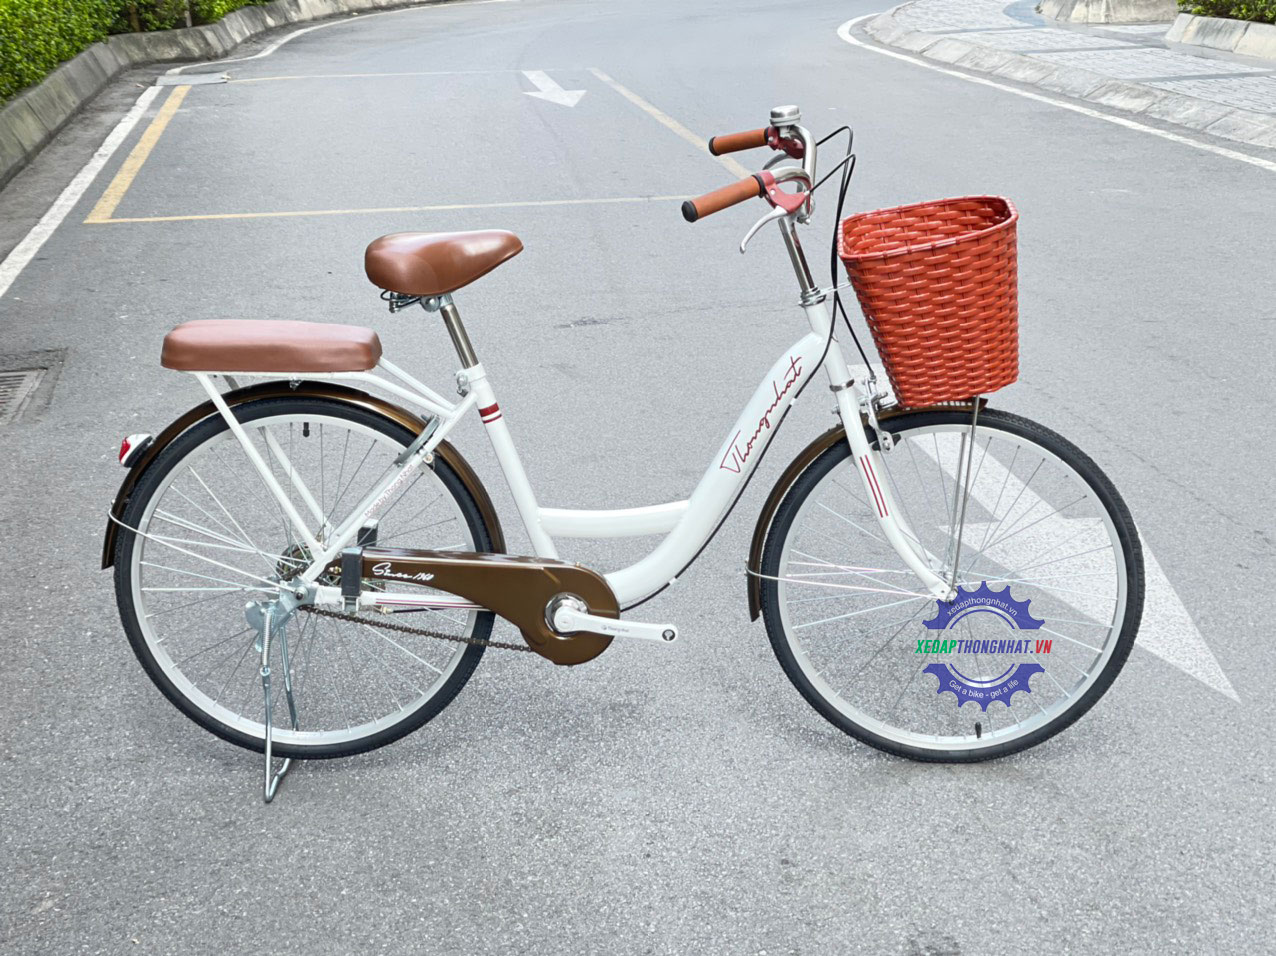 Tổng kho xe đạp đường phố City Thống Nhất 2190524 24 inch Bạc giá rẻ  chính hãng  Điện Máy Gia Khánh